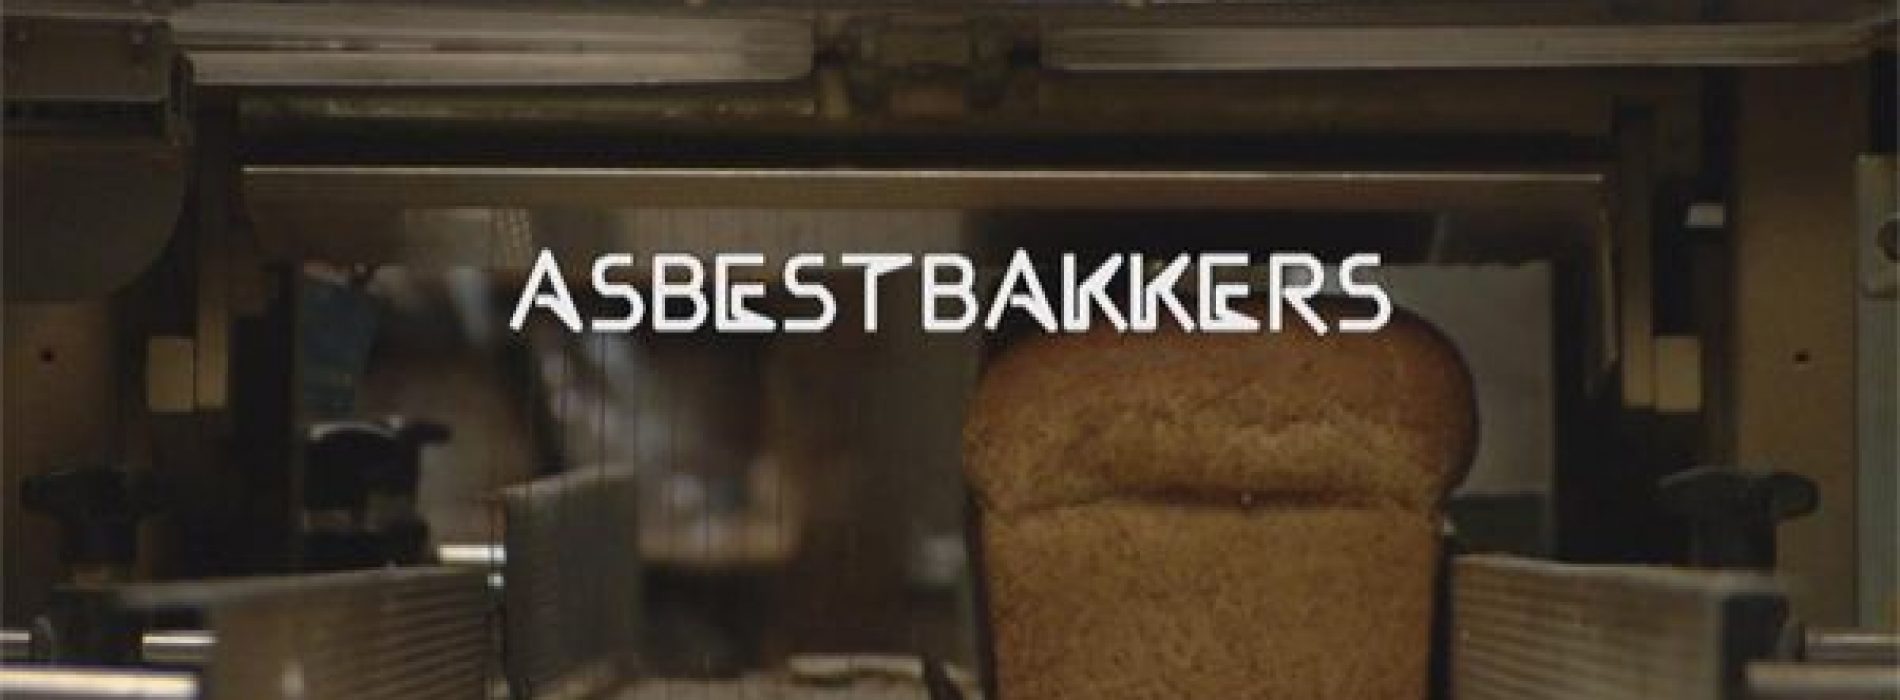 Zembla: Veel asbestovens in Nederlandse bakkerijen, FNV werkte mee aan doofpot